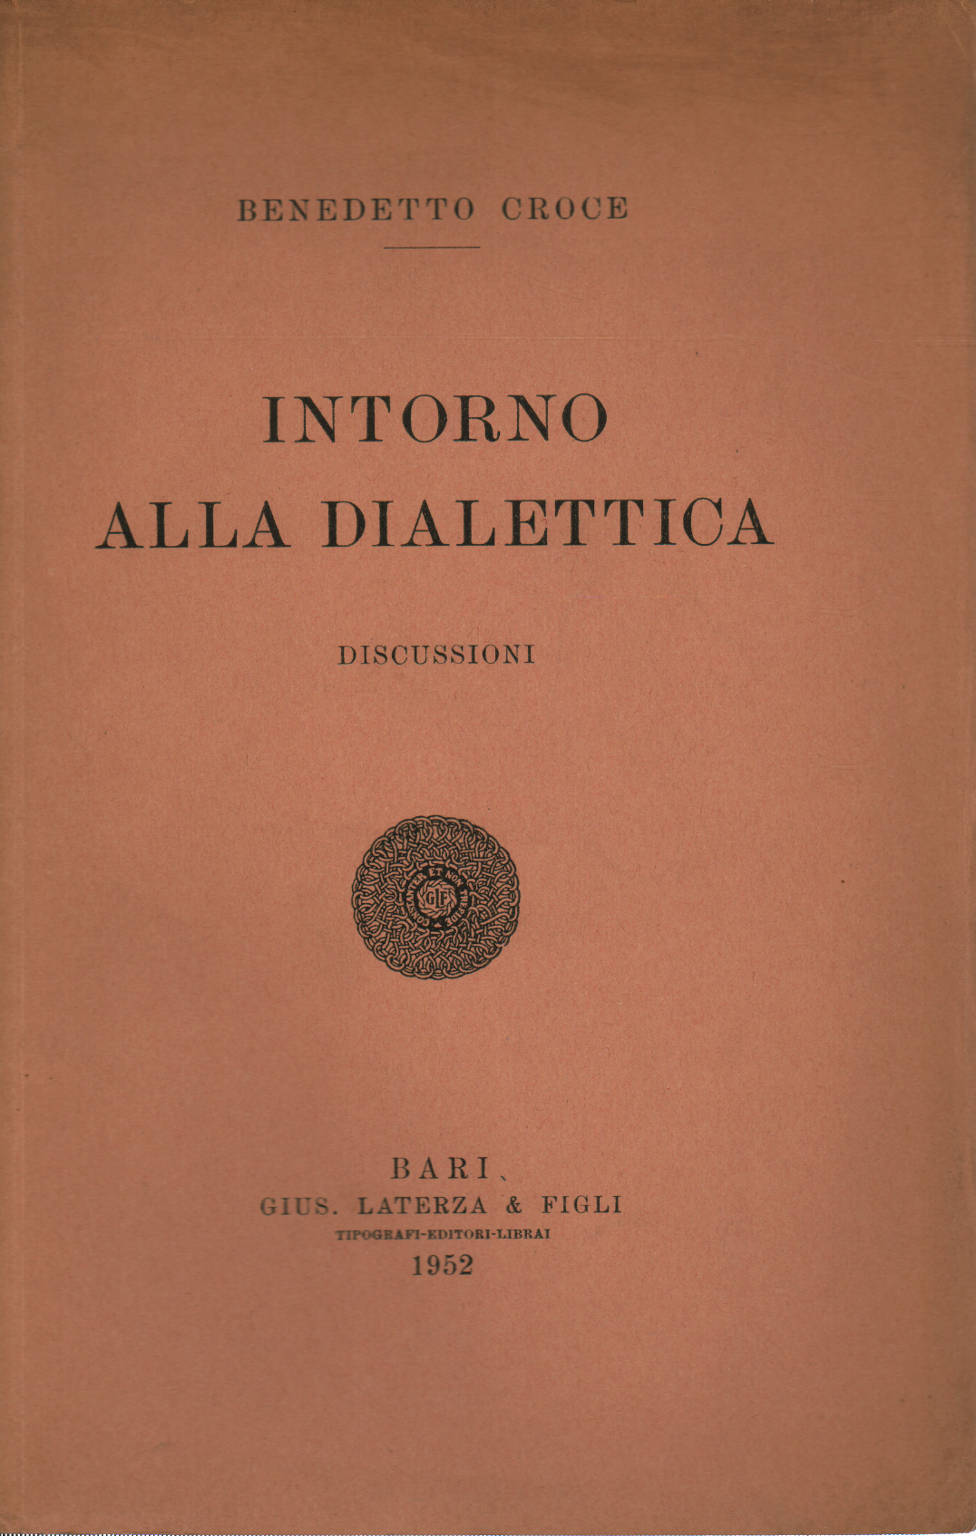 Intorno alla dialettica, Benedetto Croce